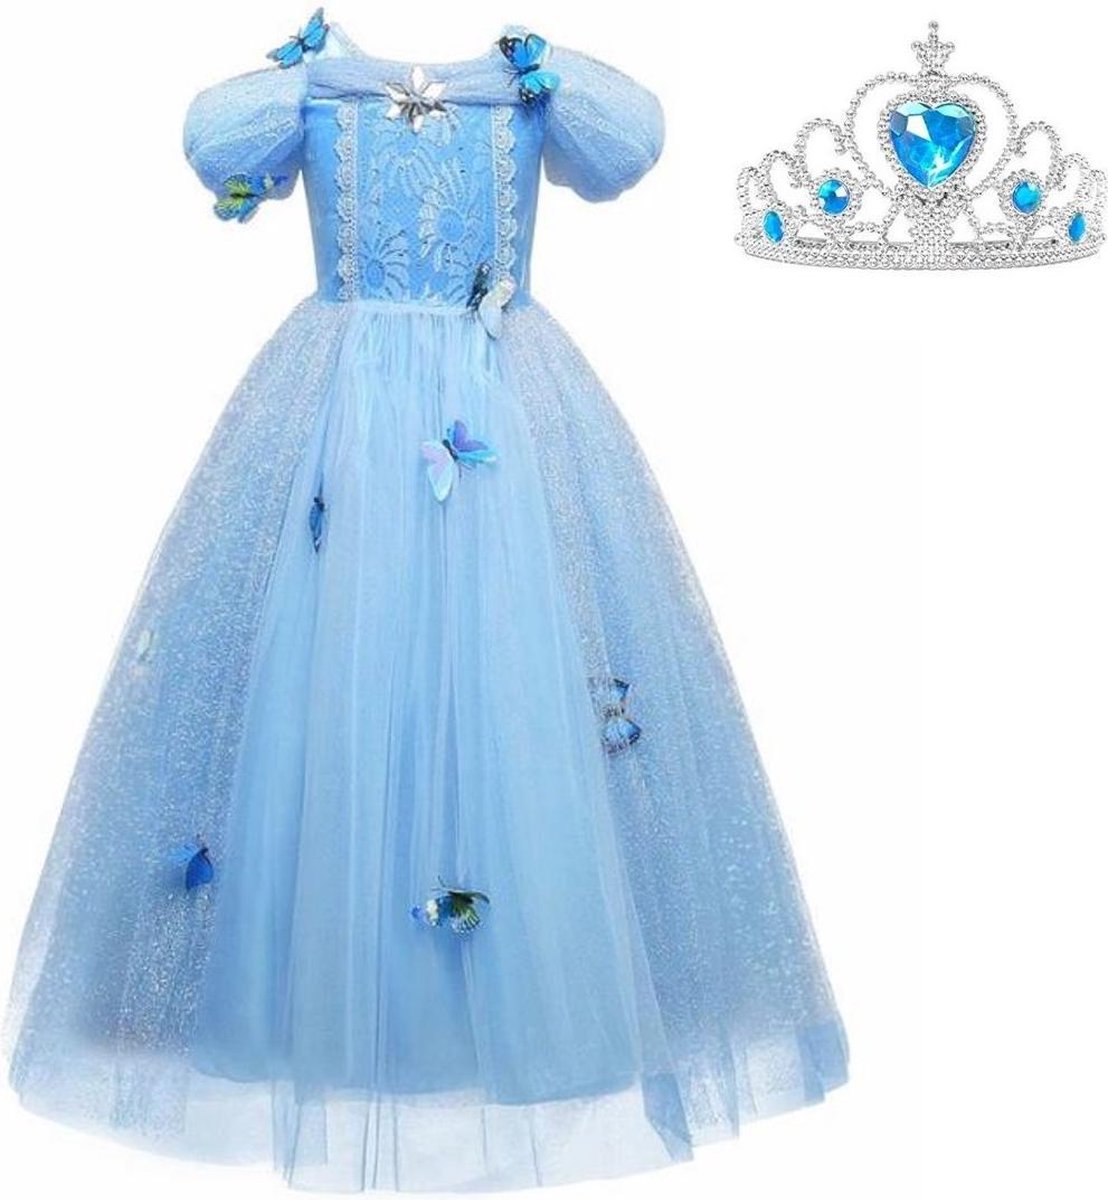 Assepoester jurk Prinsessen jurk verkleedjurk 128-134 (130) blauw Luxe met vlinders korte mouw + kroon verkleedkleding